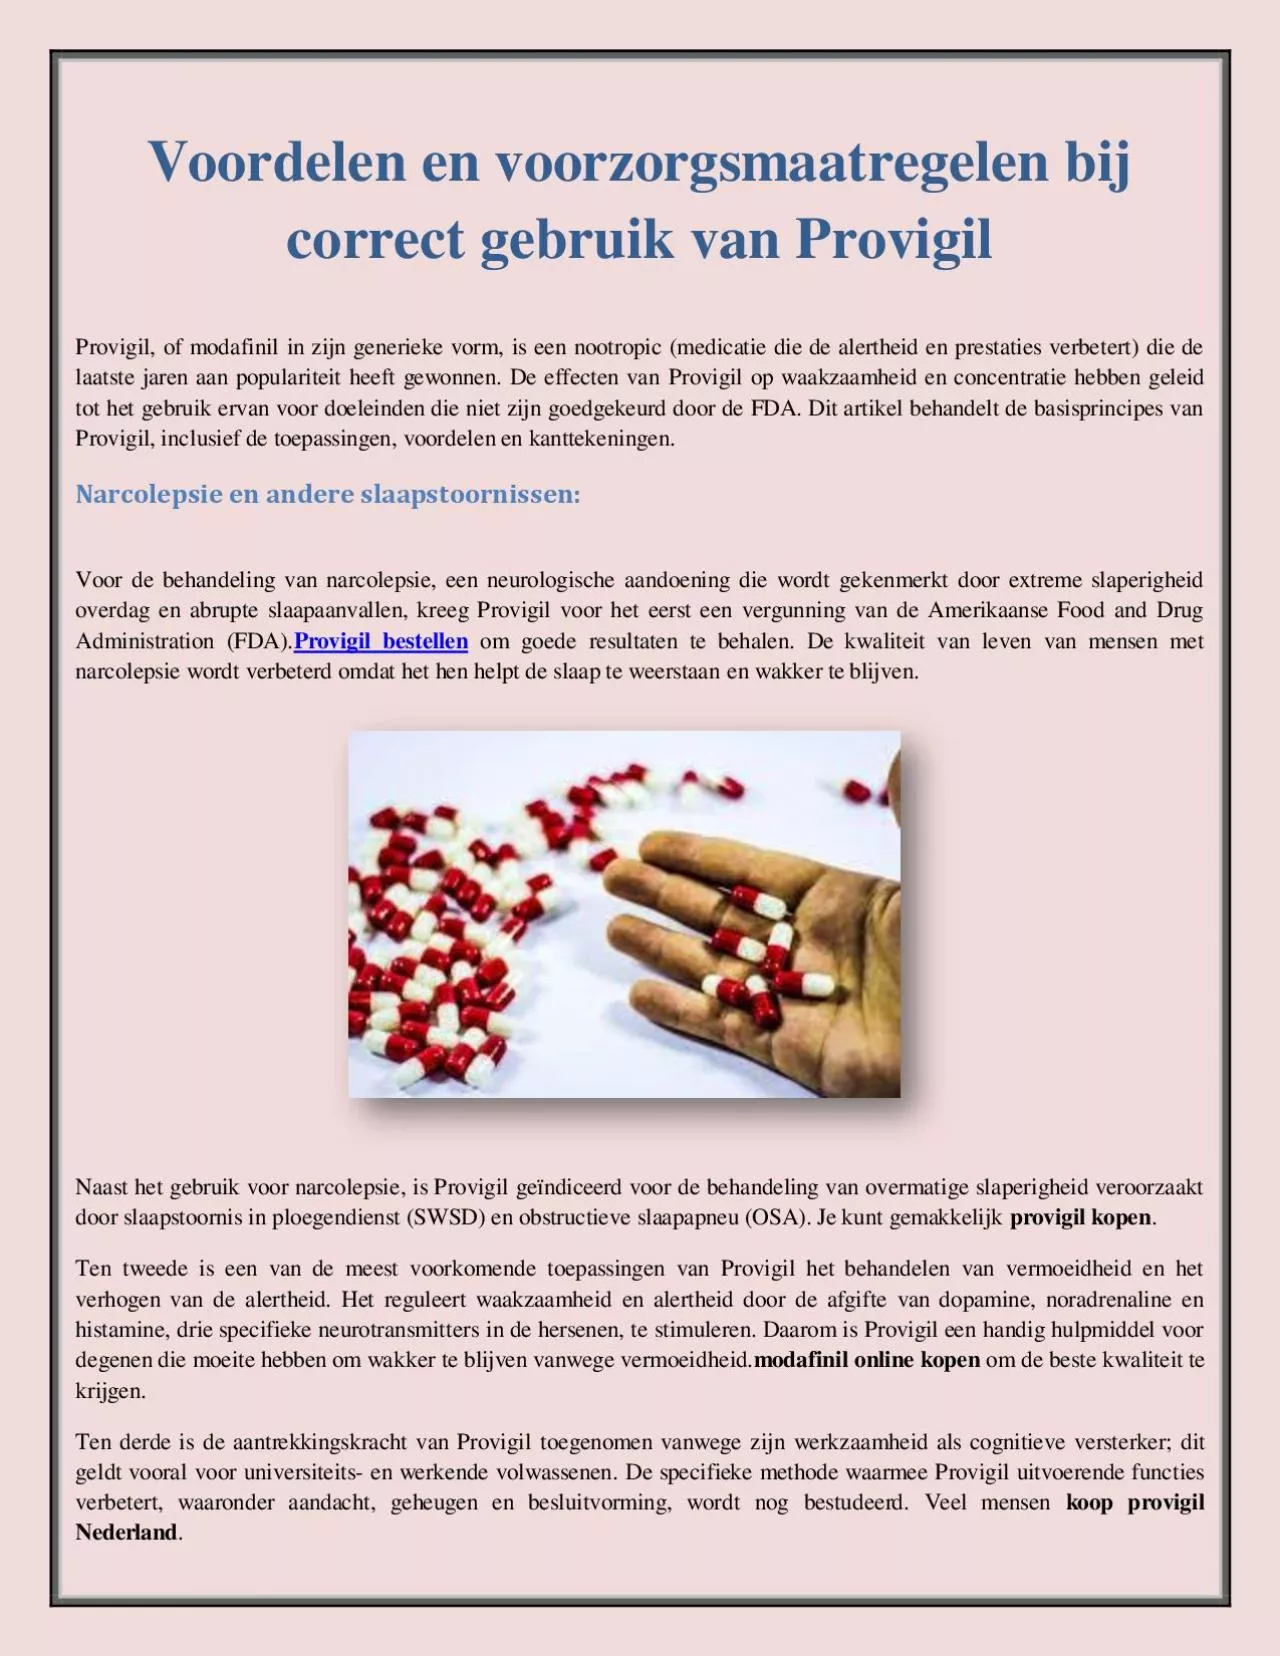 Voordelen en voorzorgsmaatregelen bij correct gebruik van Provigil